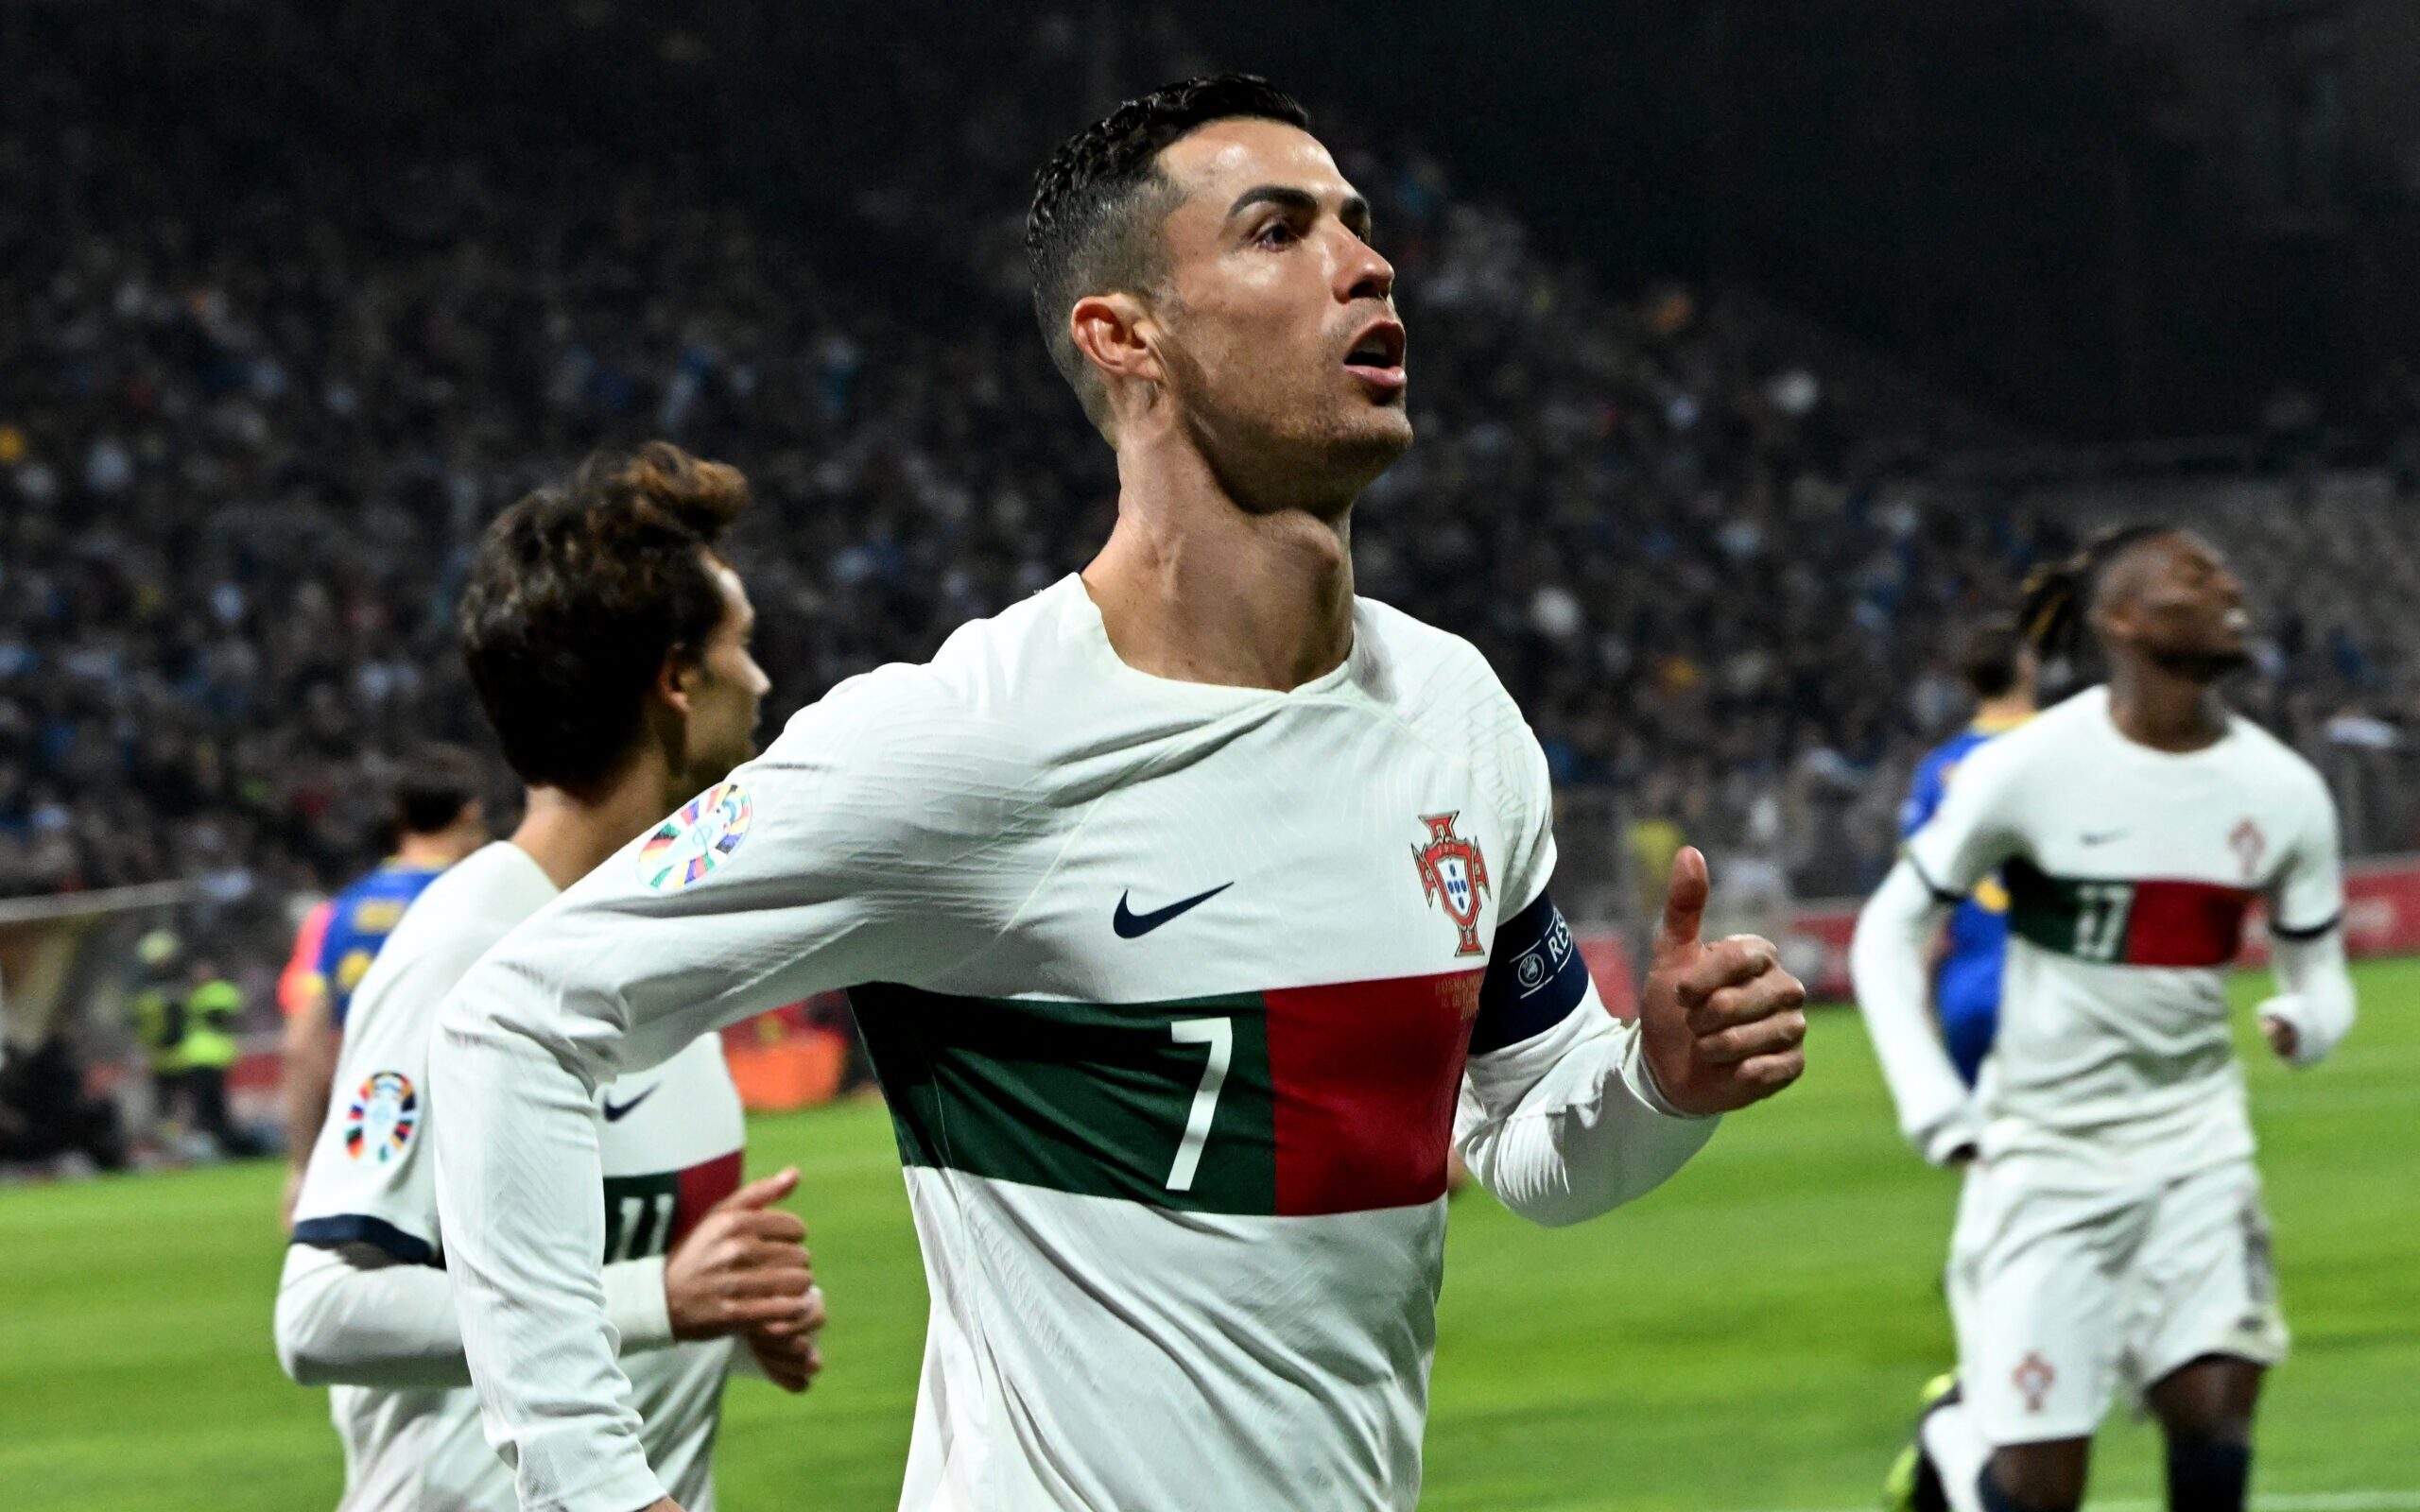 Portugal, Últimas notícias, jogos e resultados